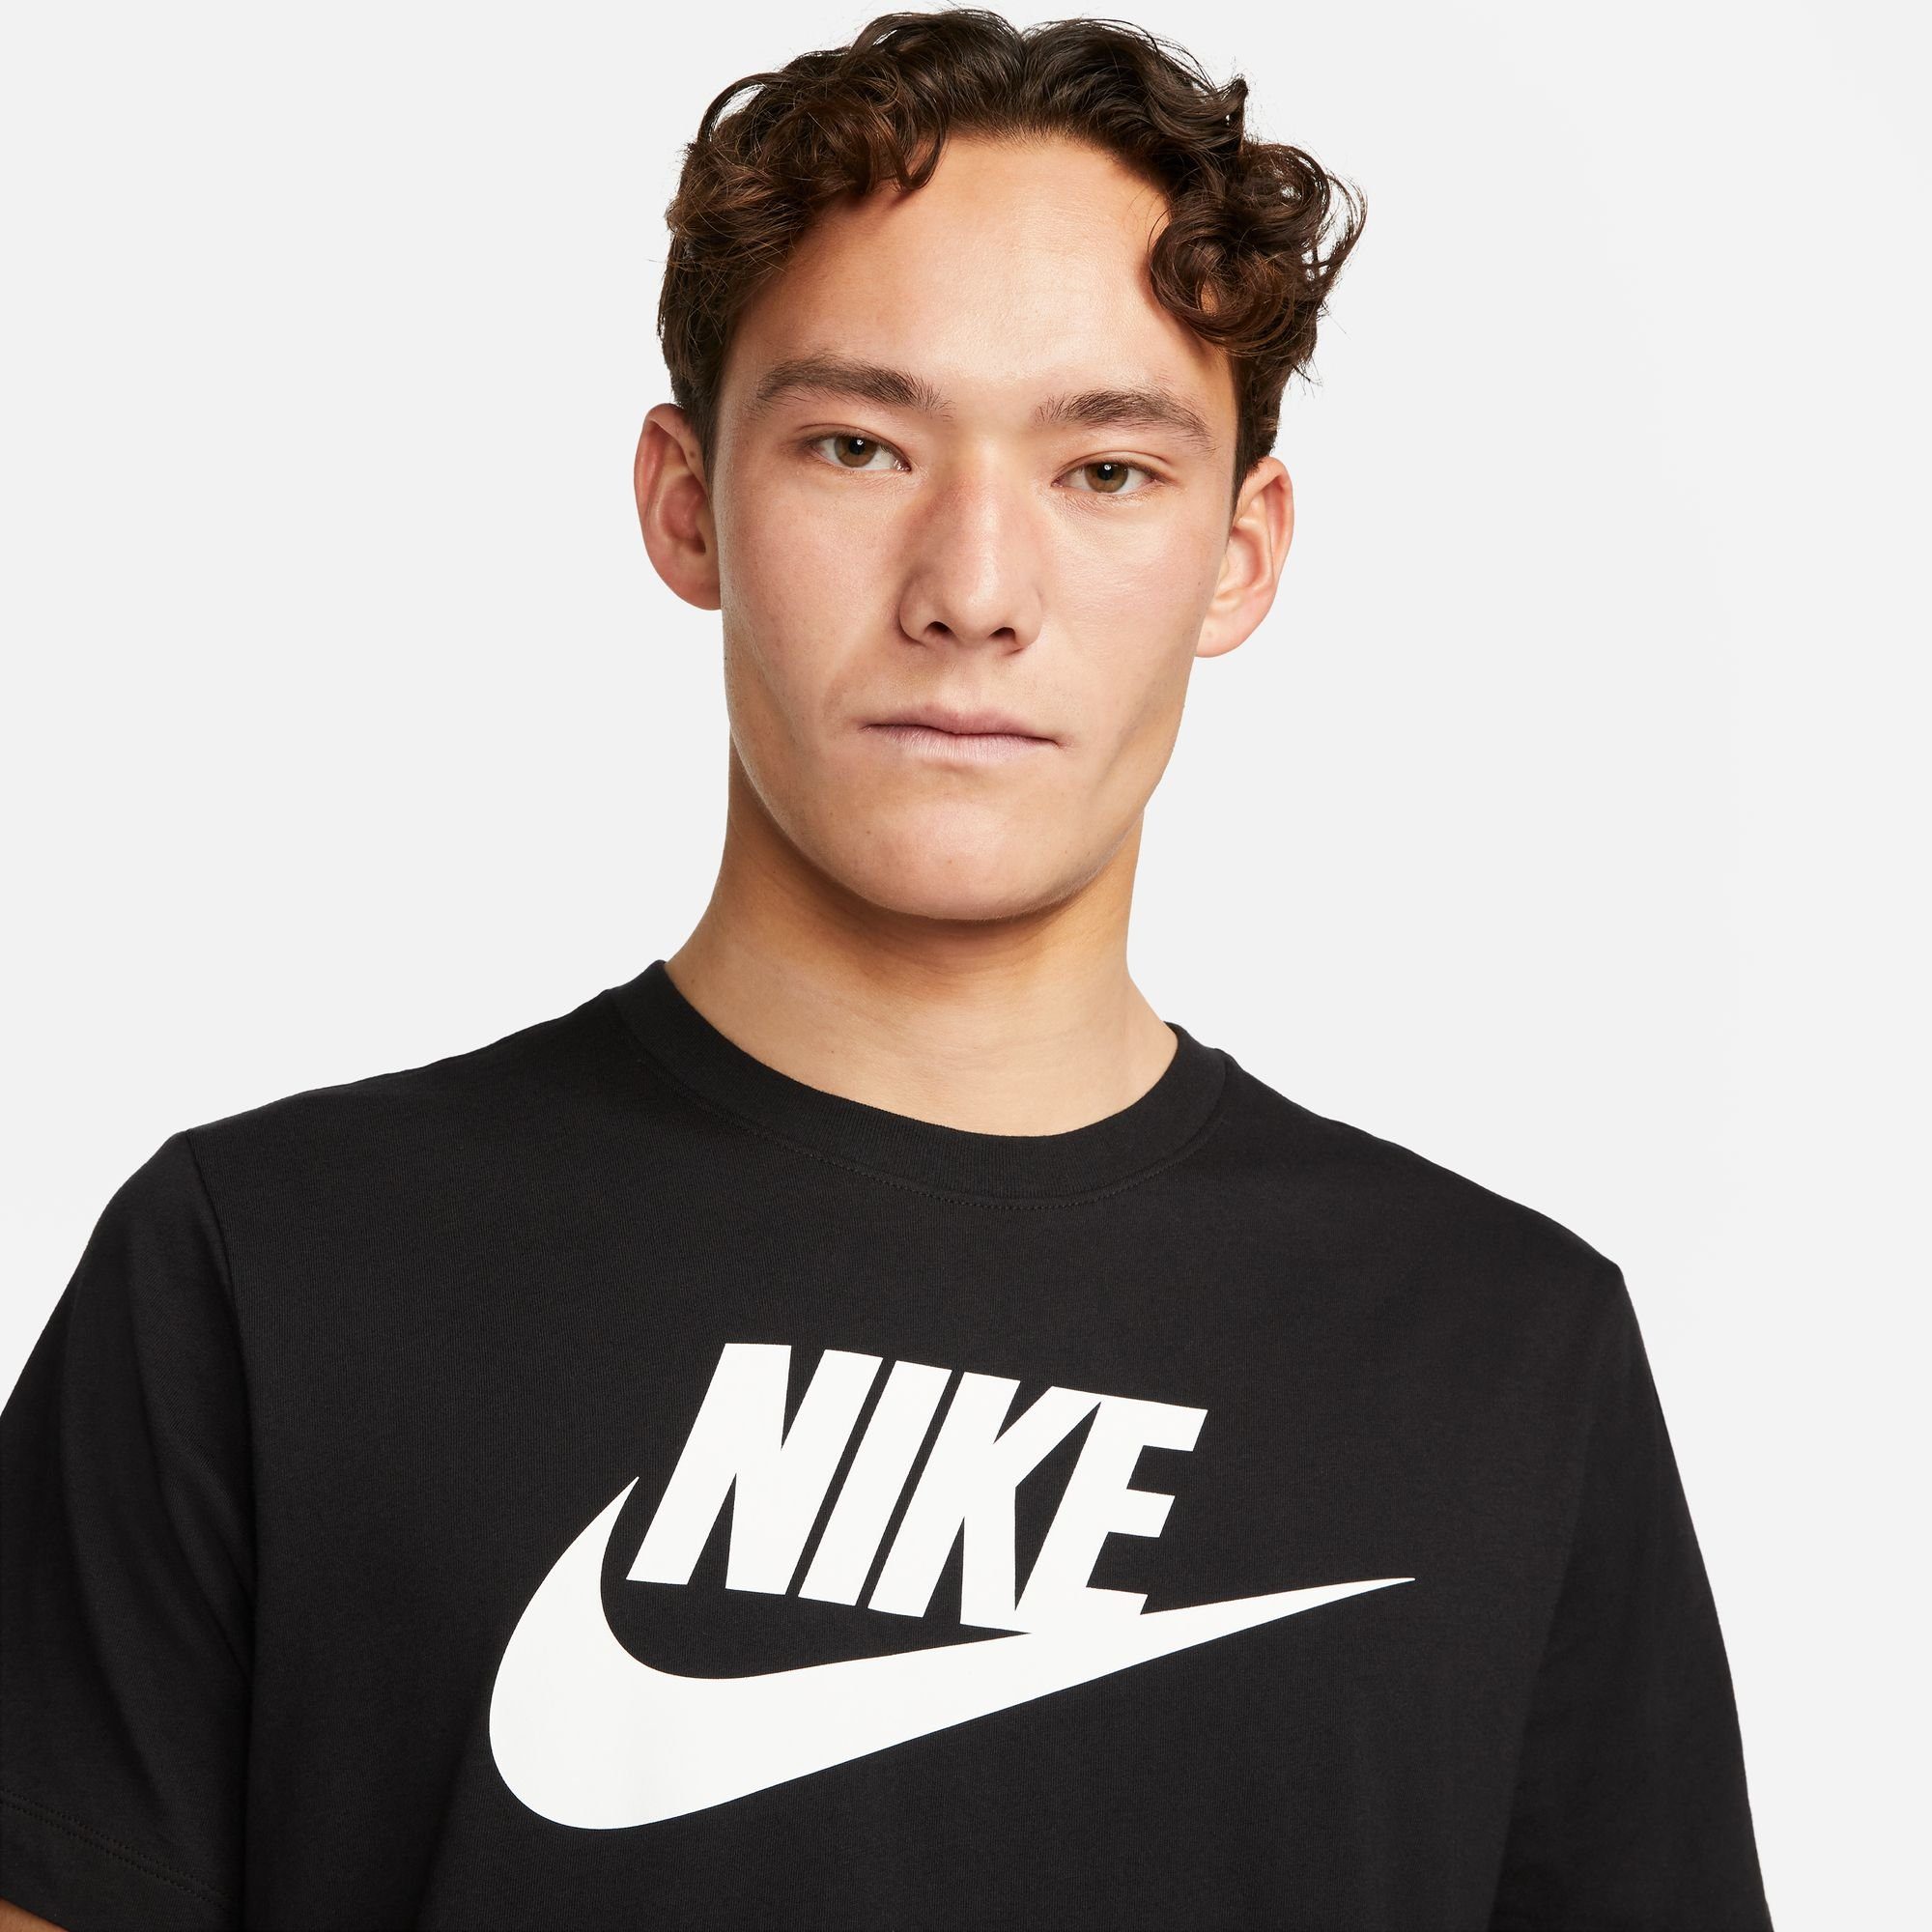 T-SHIRT MEN'S T-Shirt Nike schwarz Sportswear